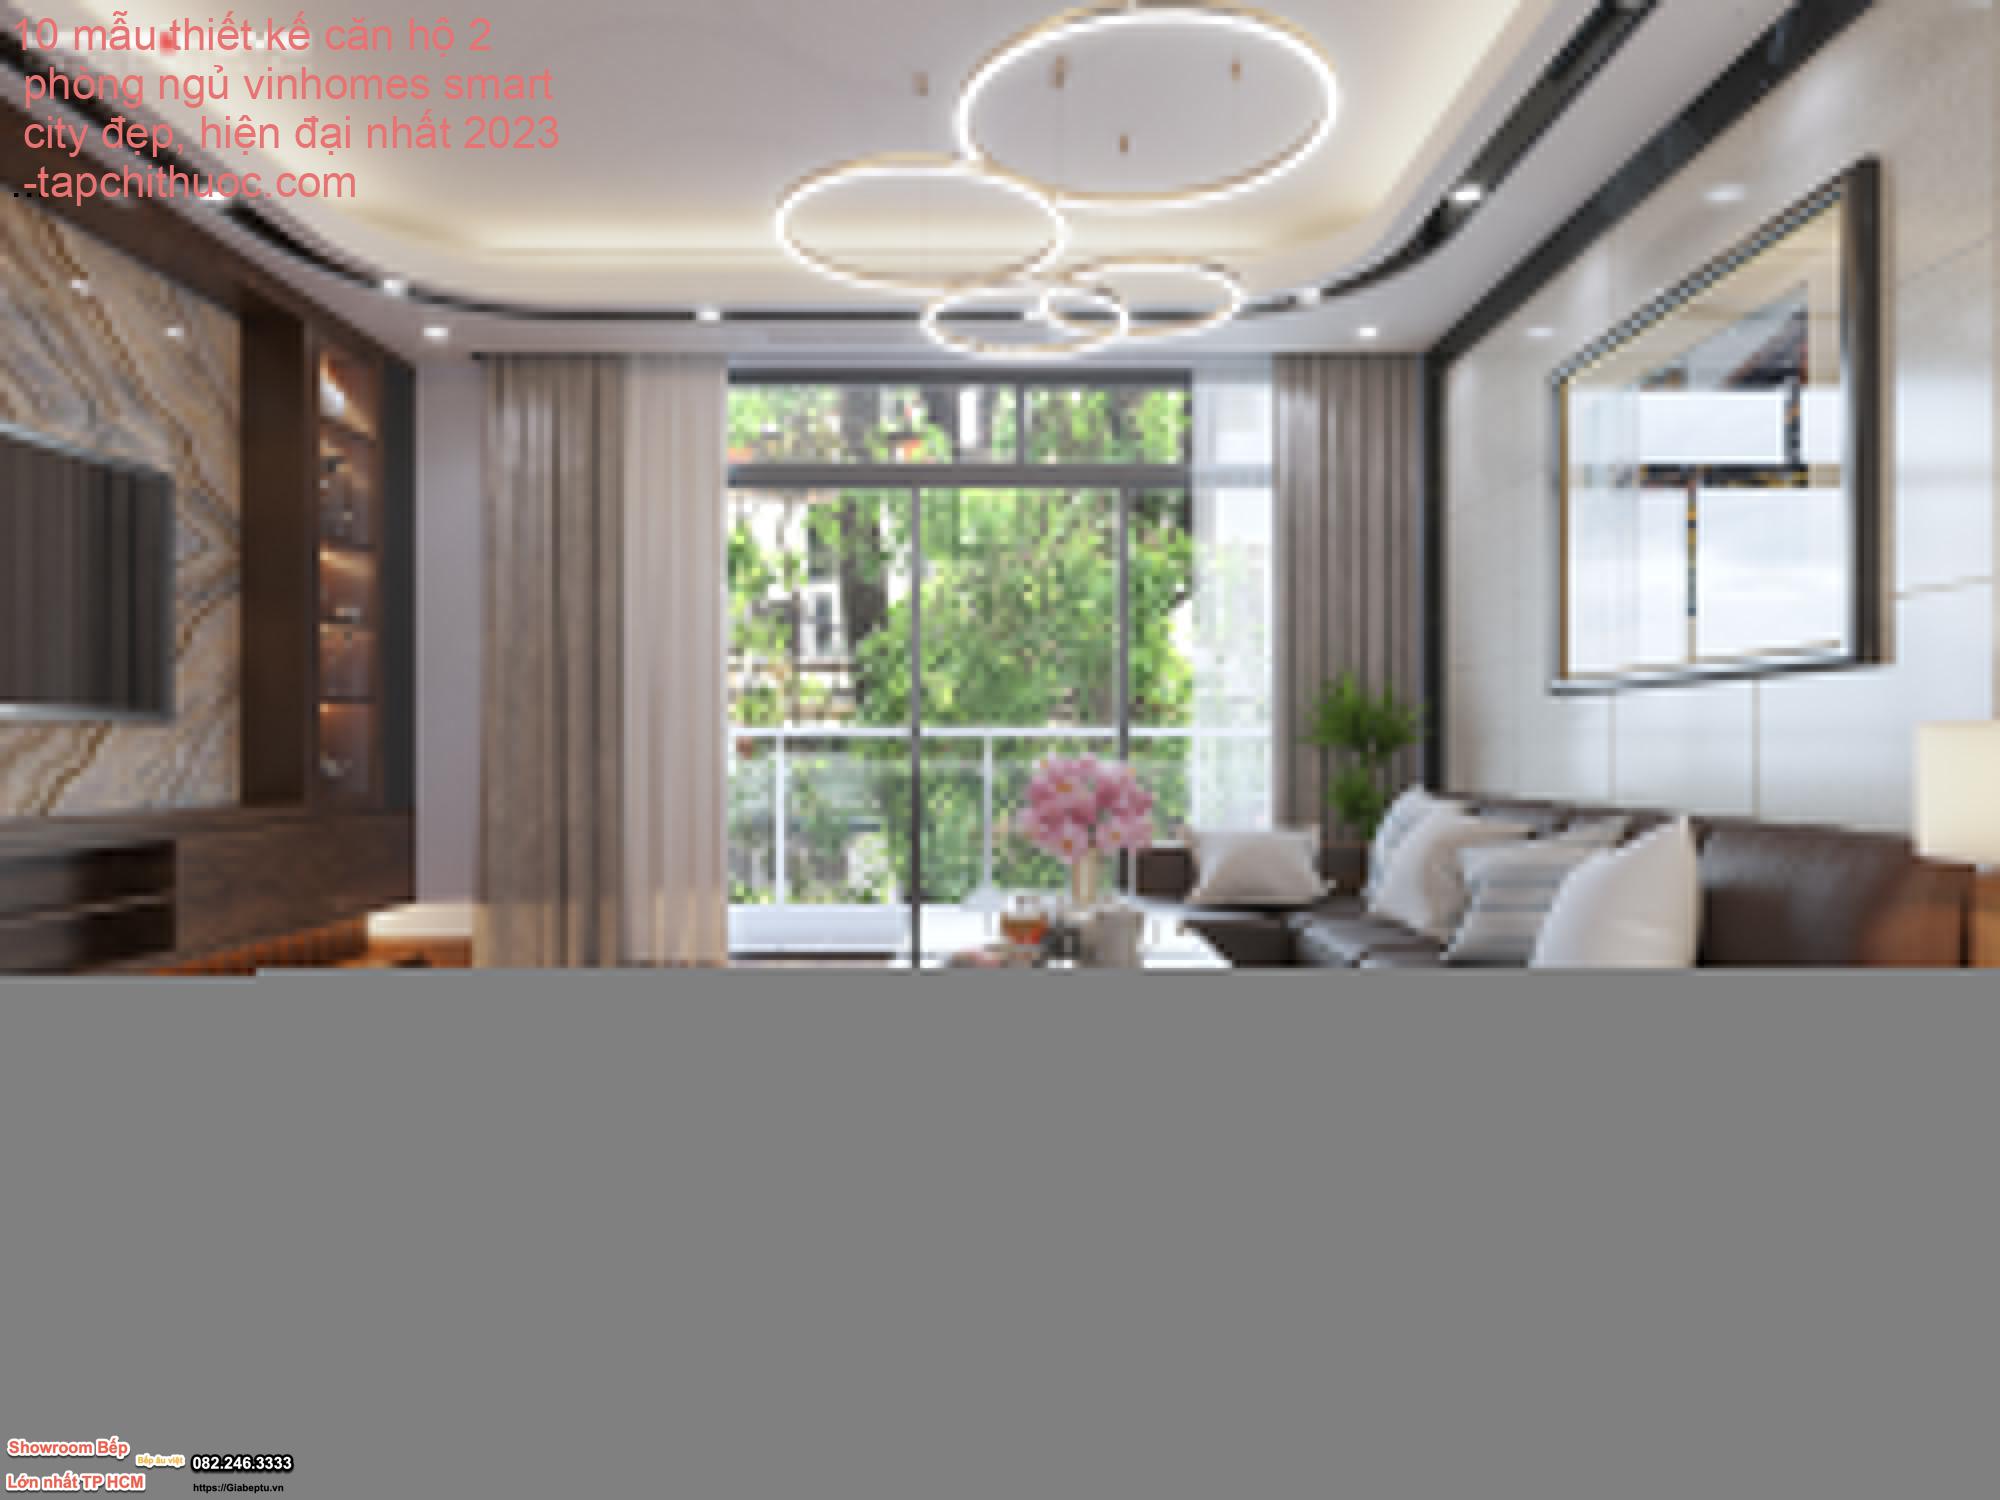 10 mẫu thiết kế căn hộ 2 phòng ngủ vinhomes smart city đẹp, hiện đại nhất 2023